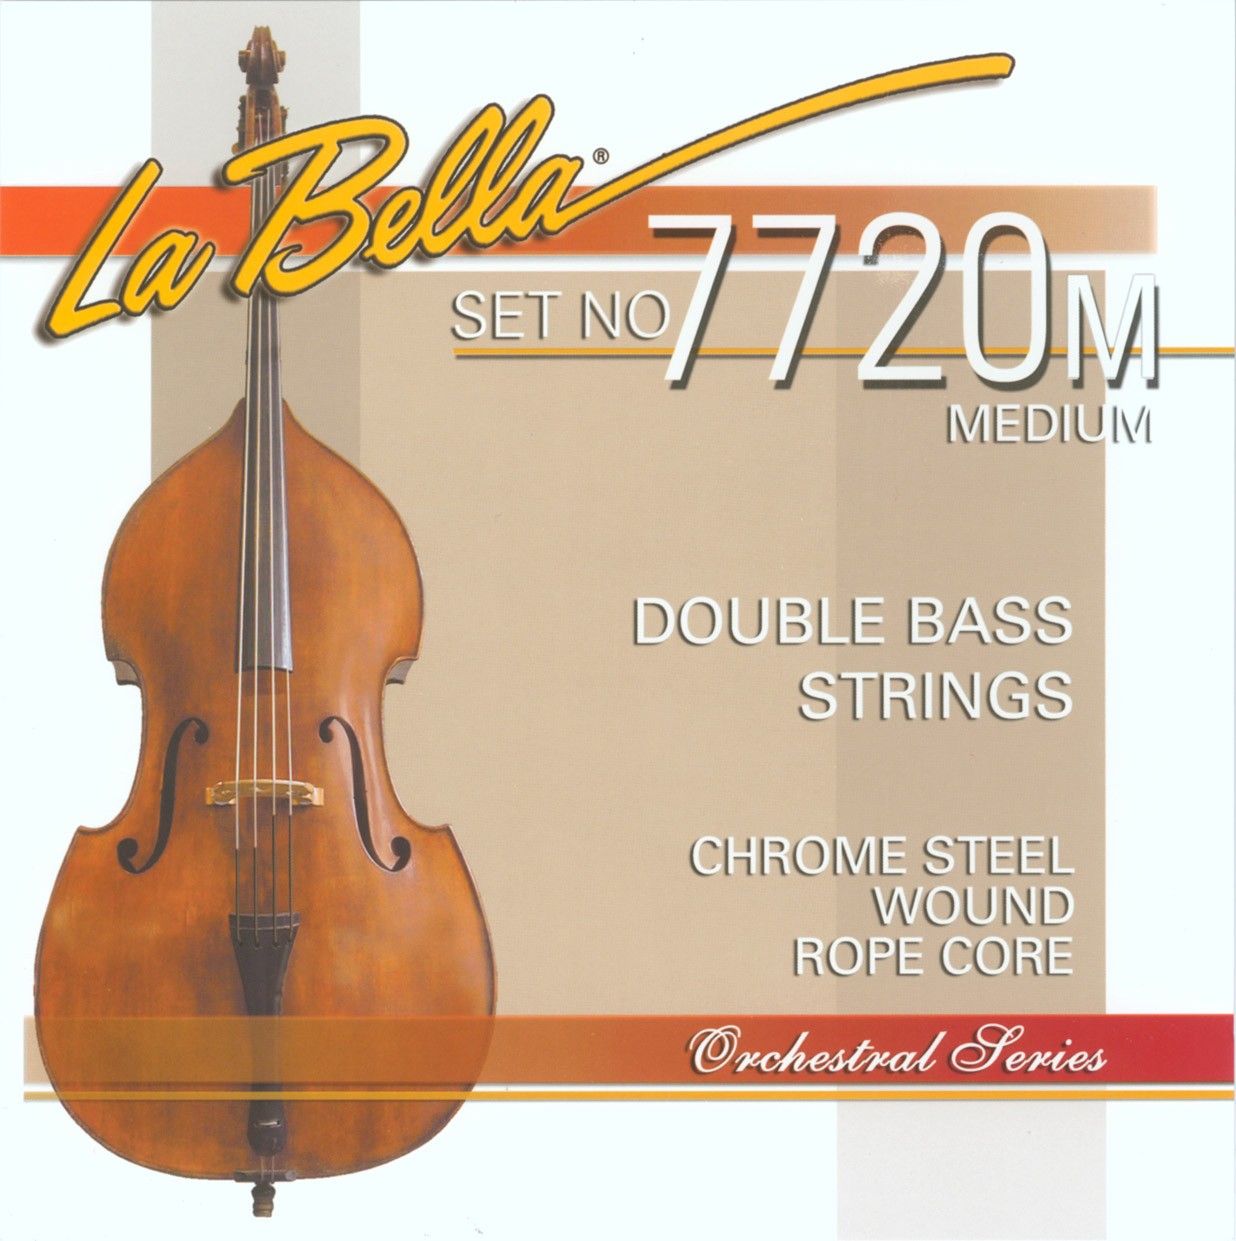 LA BELLA La Bella Double Bass Nickel Flat | Muta di corde per contrabbasso 7720M Tensione: Media